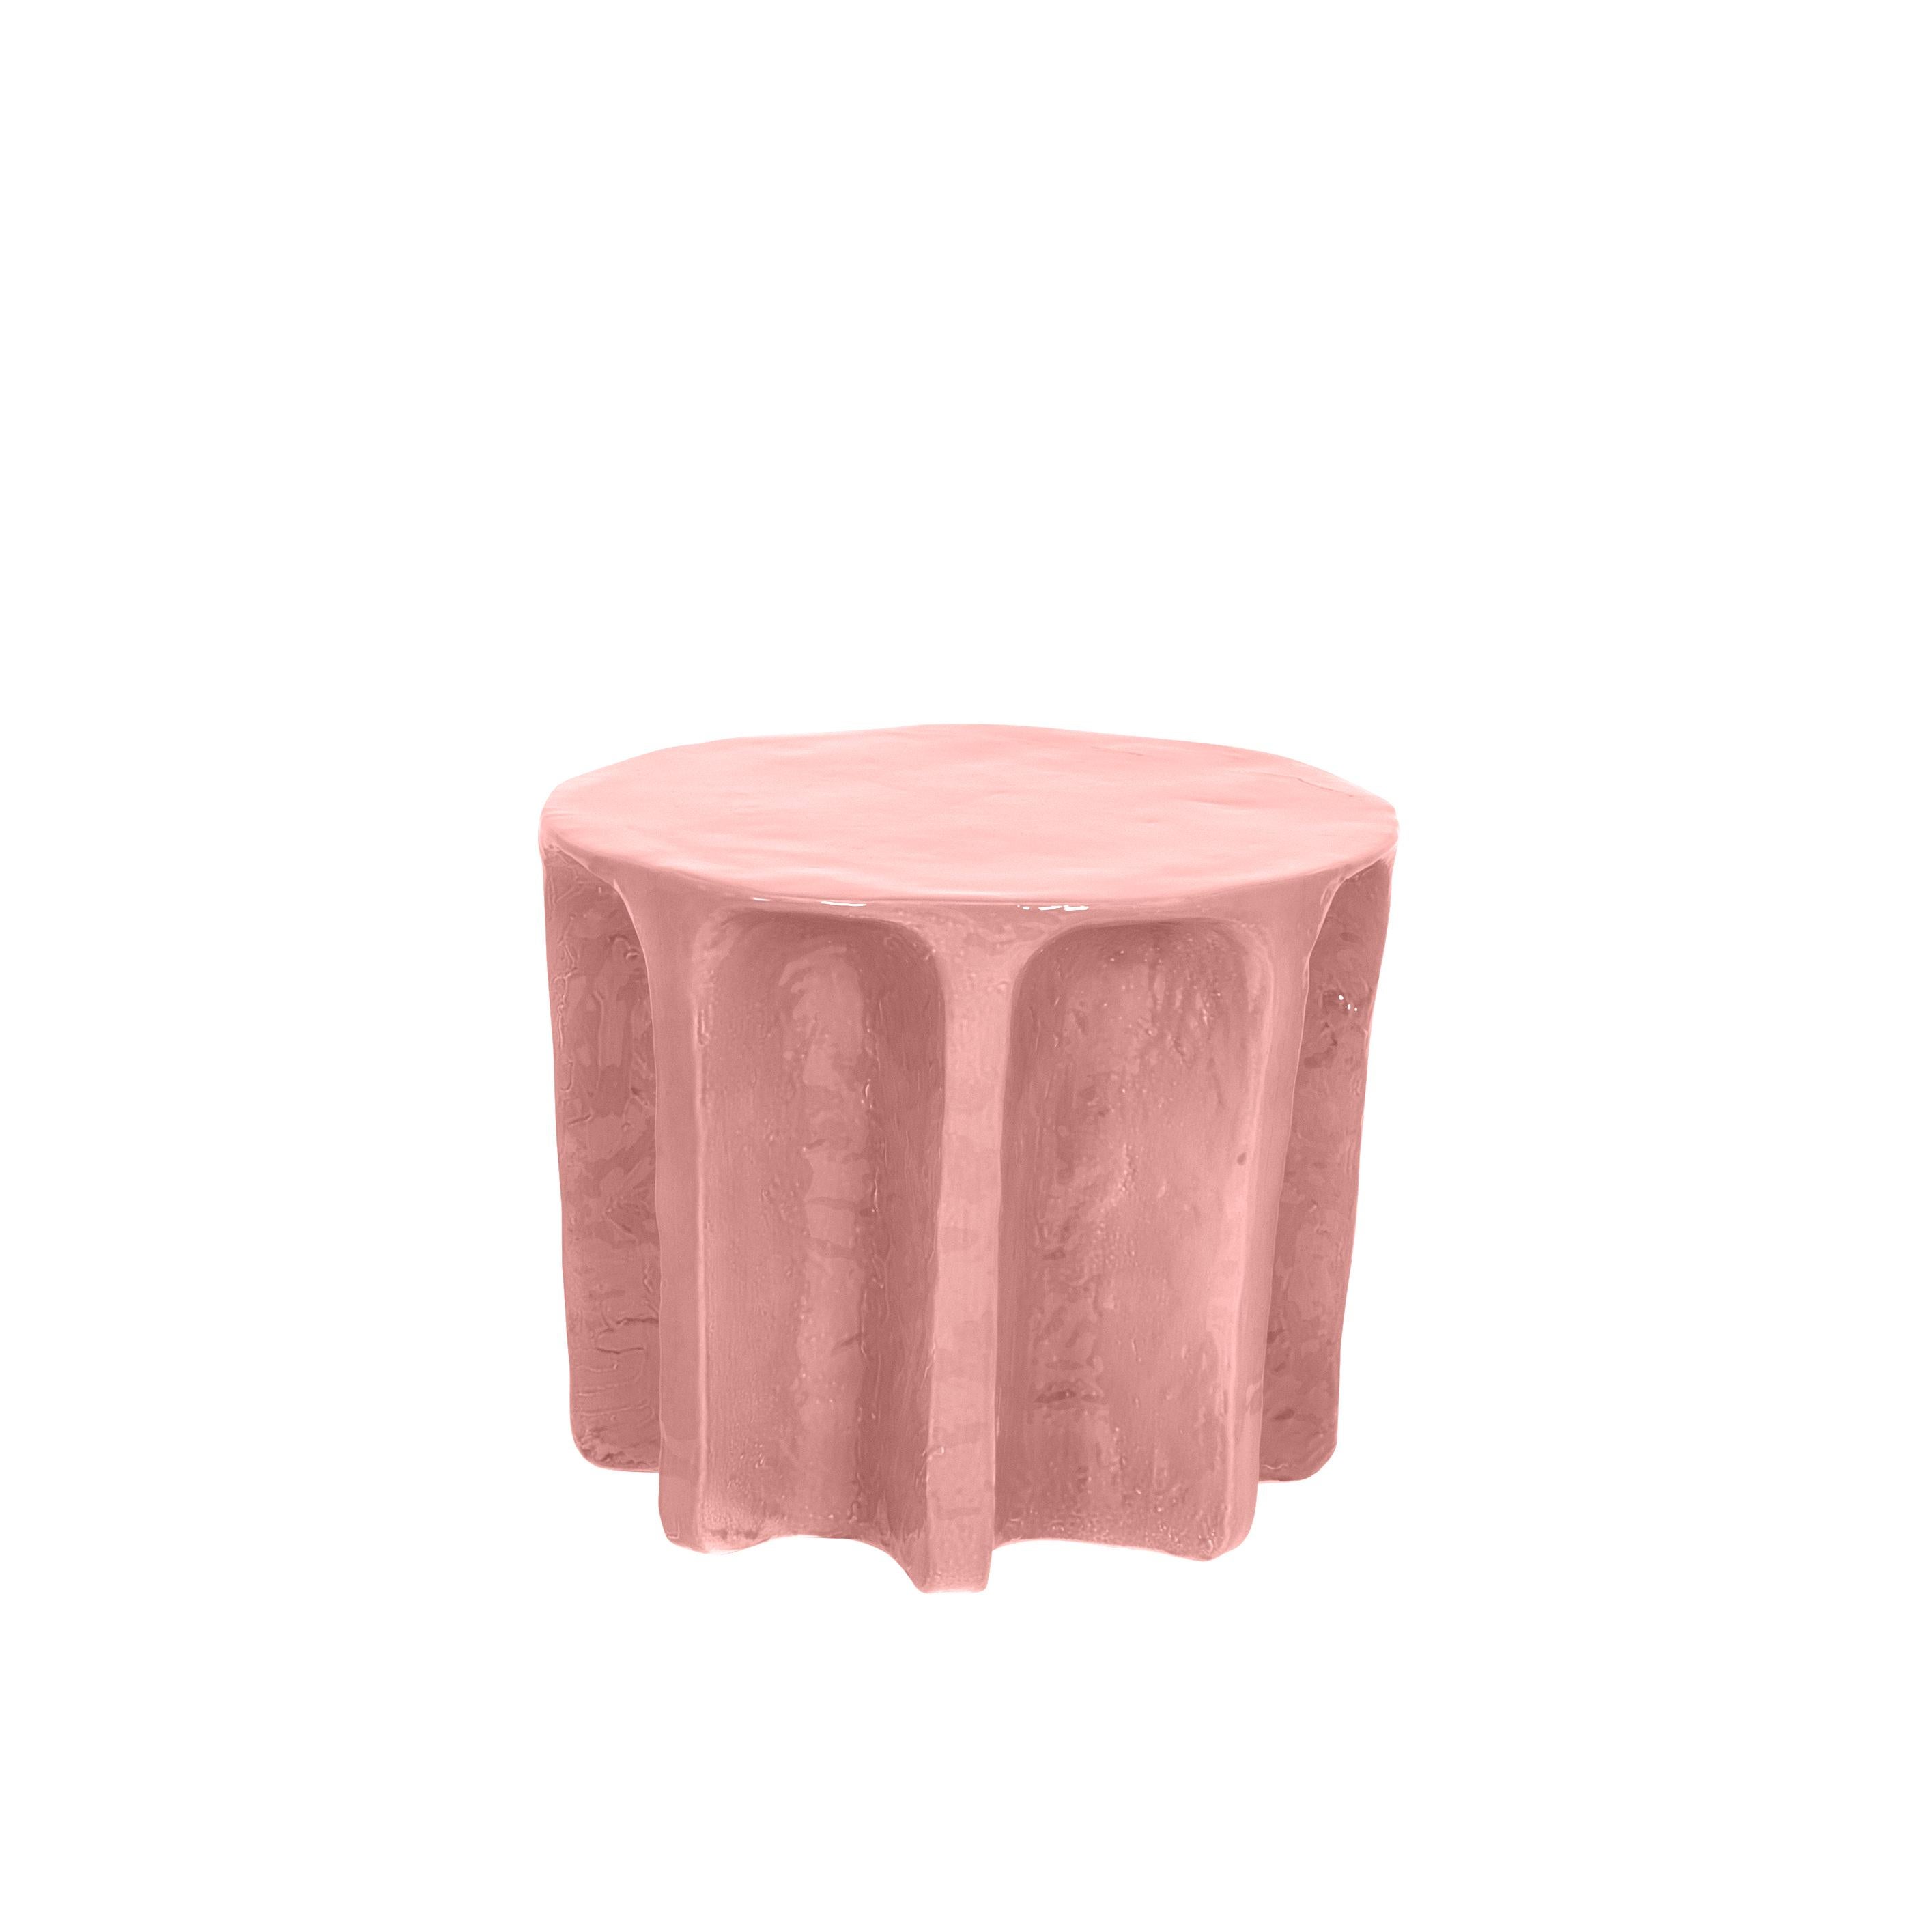 Table basse ronde en rosace Chouchou par Pulpo
Dimensions : D 55 x H 45 cm
Matériaux : Céramique

Disponible également en différentes couleurs.

Chouchou porte les contours d'une colonne antique - ce qui, connaissant le designer Lorenzo Zanovello,